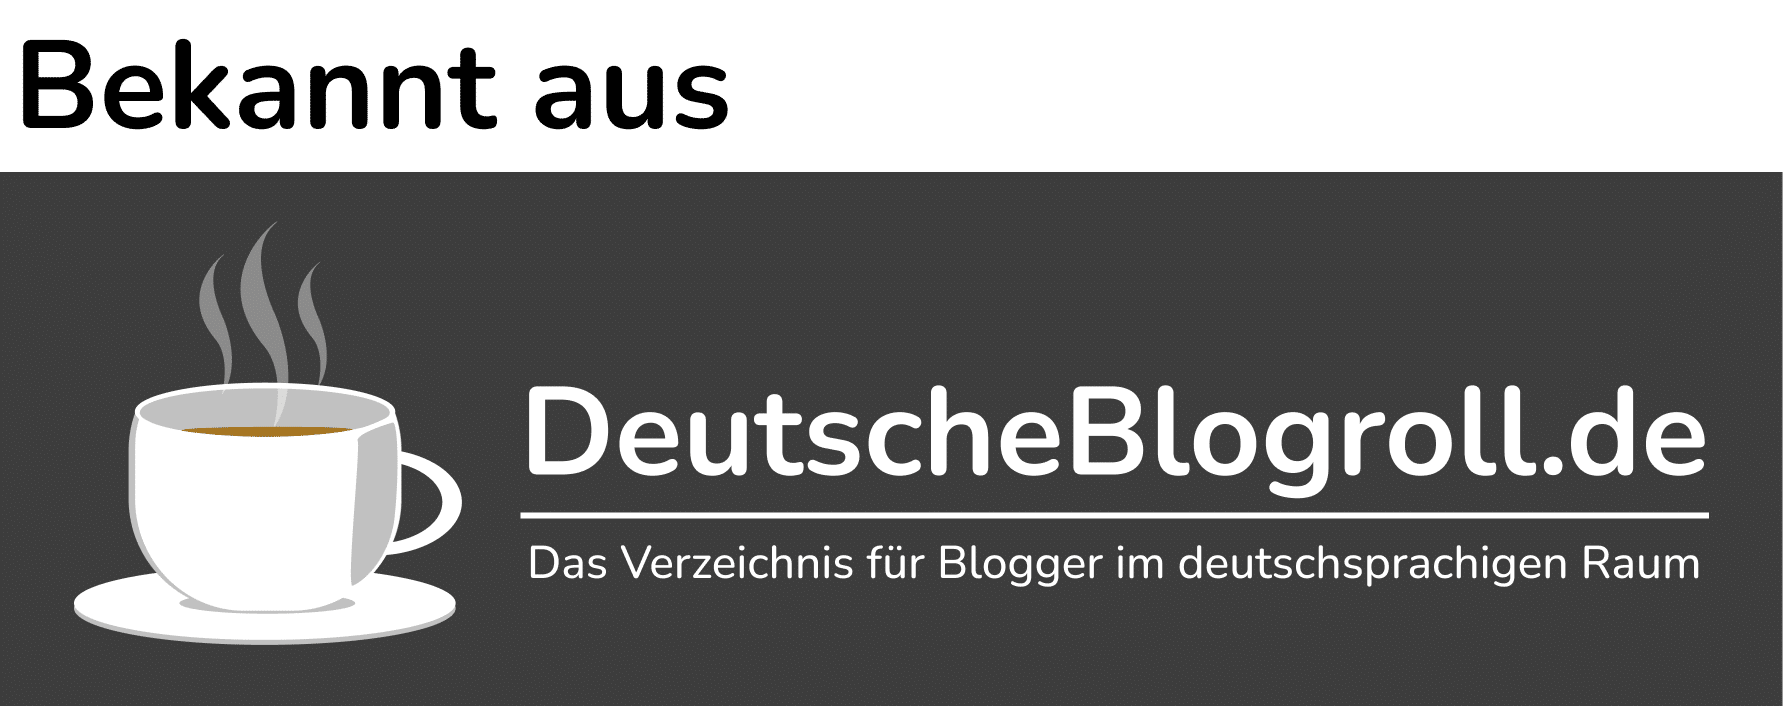 Deutsche Blogroll